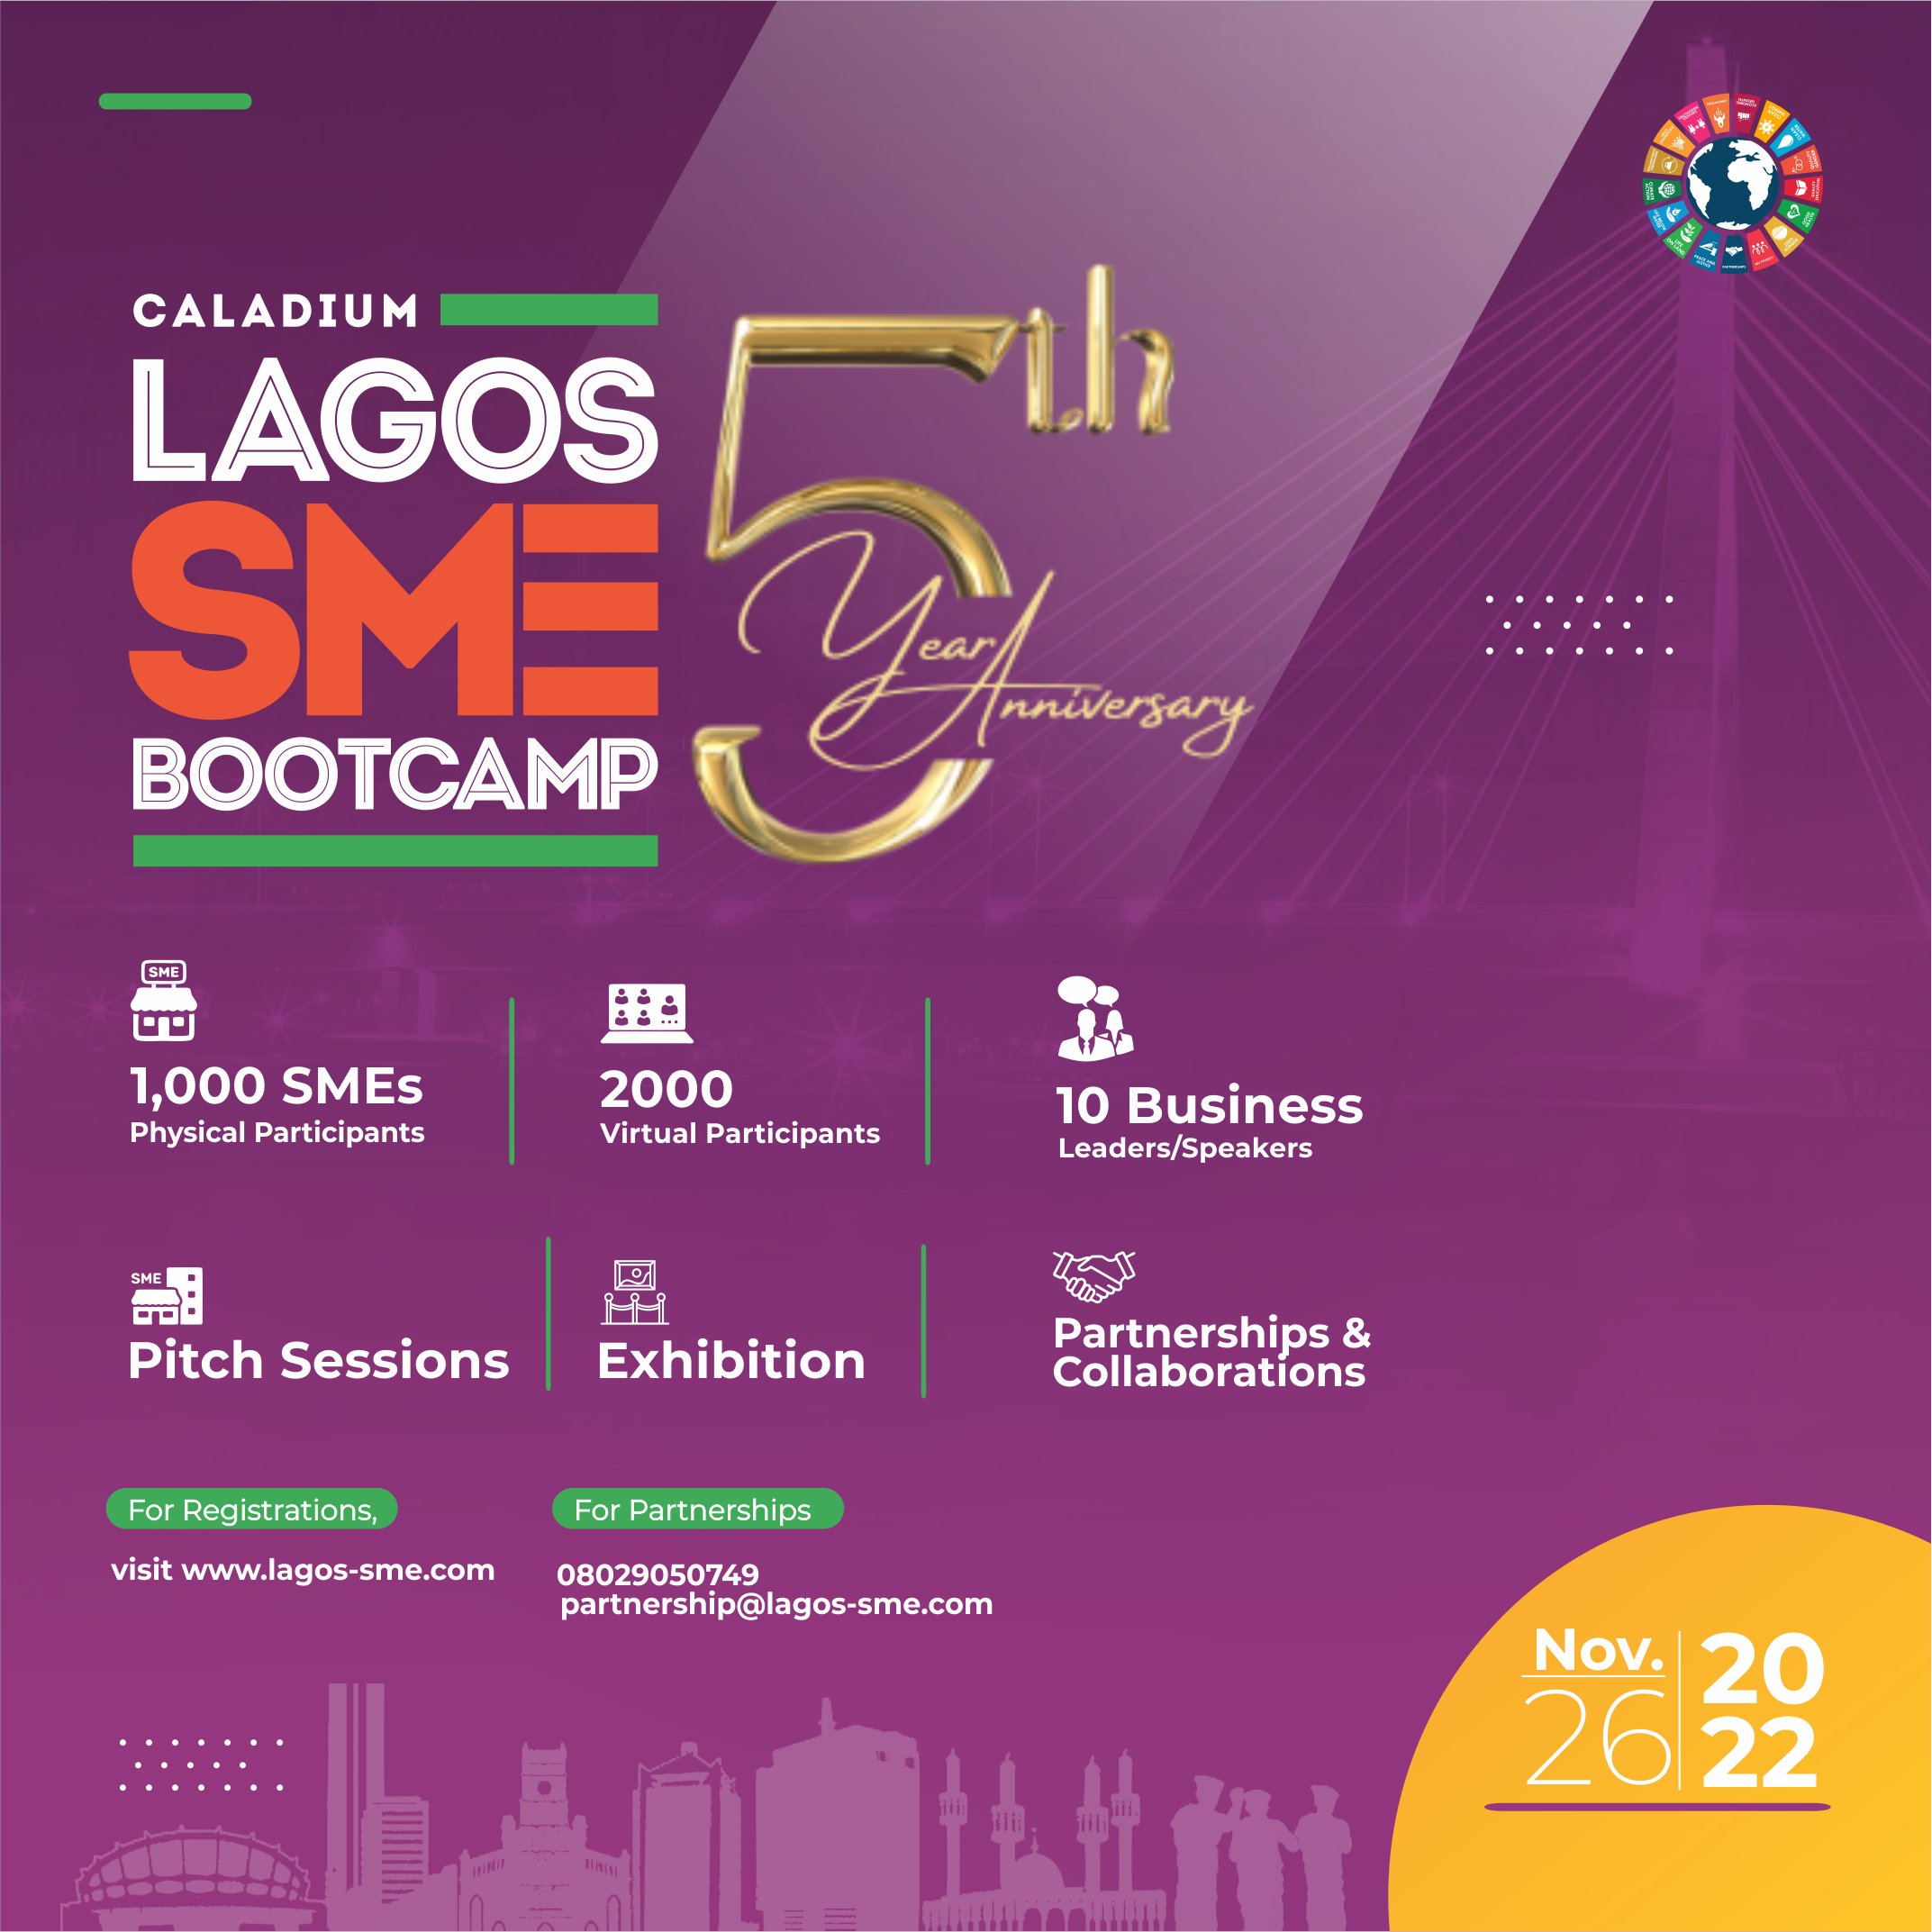  Caladium Lagos SME Bootcamp 